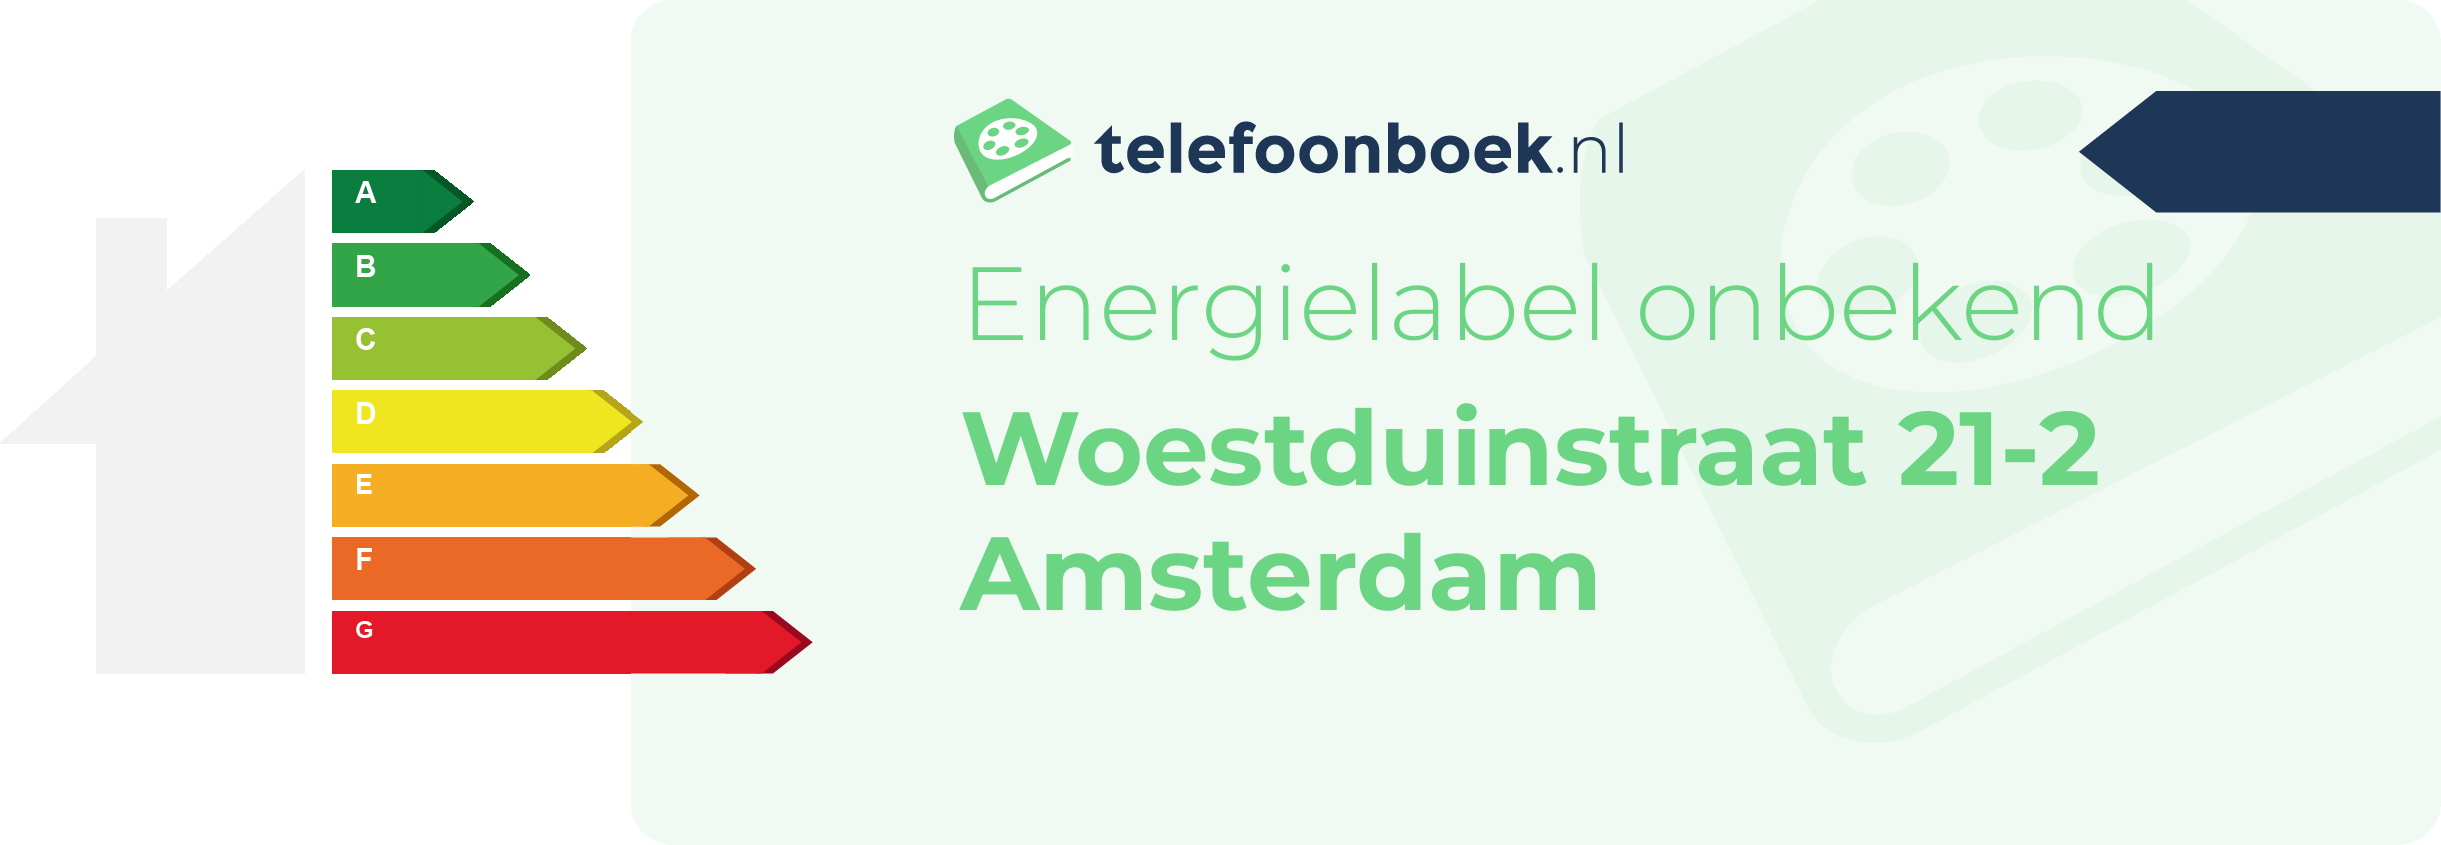 Energielabel Woestduinstraat 21-2 Amsterdam